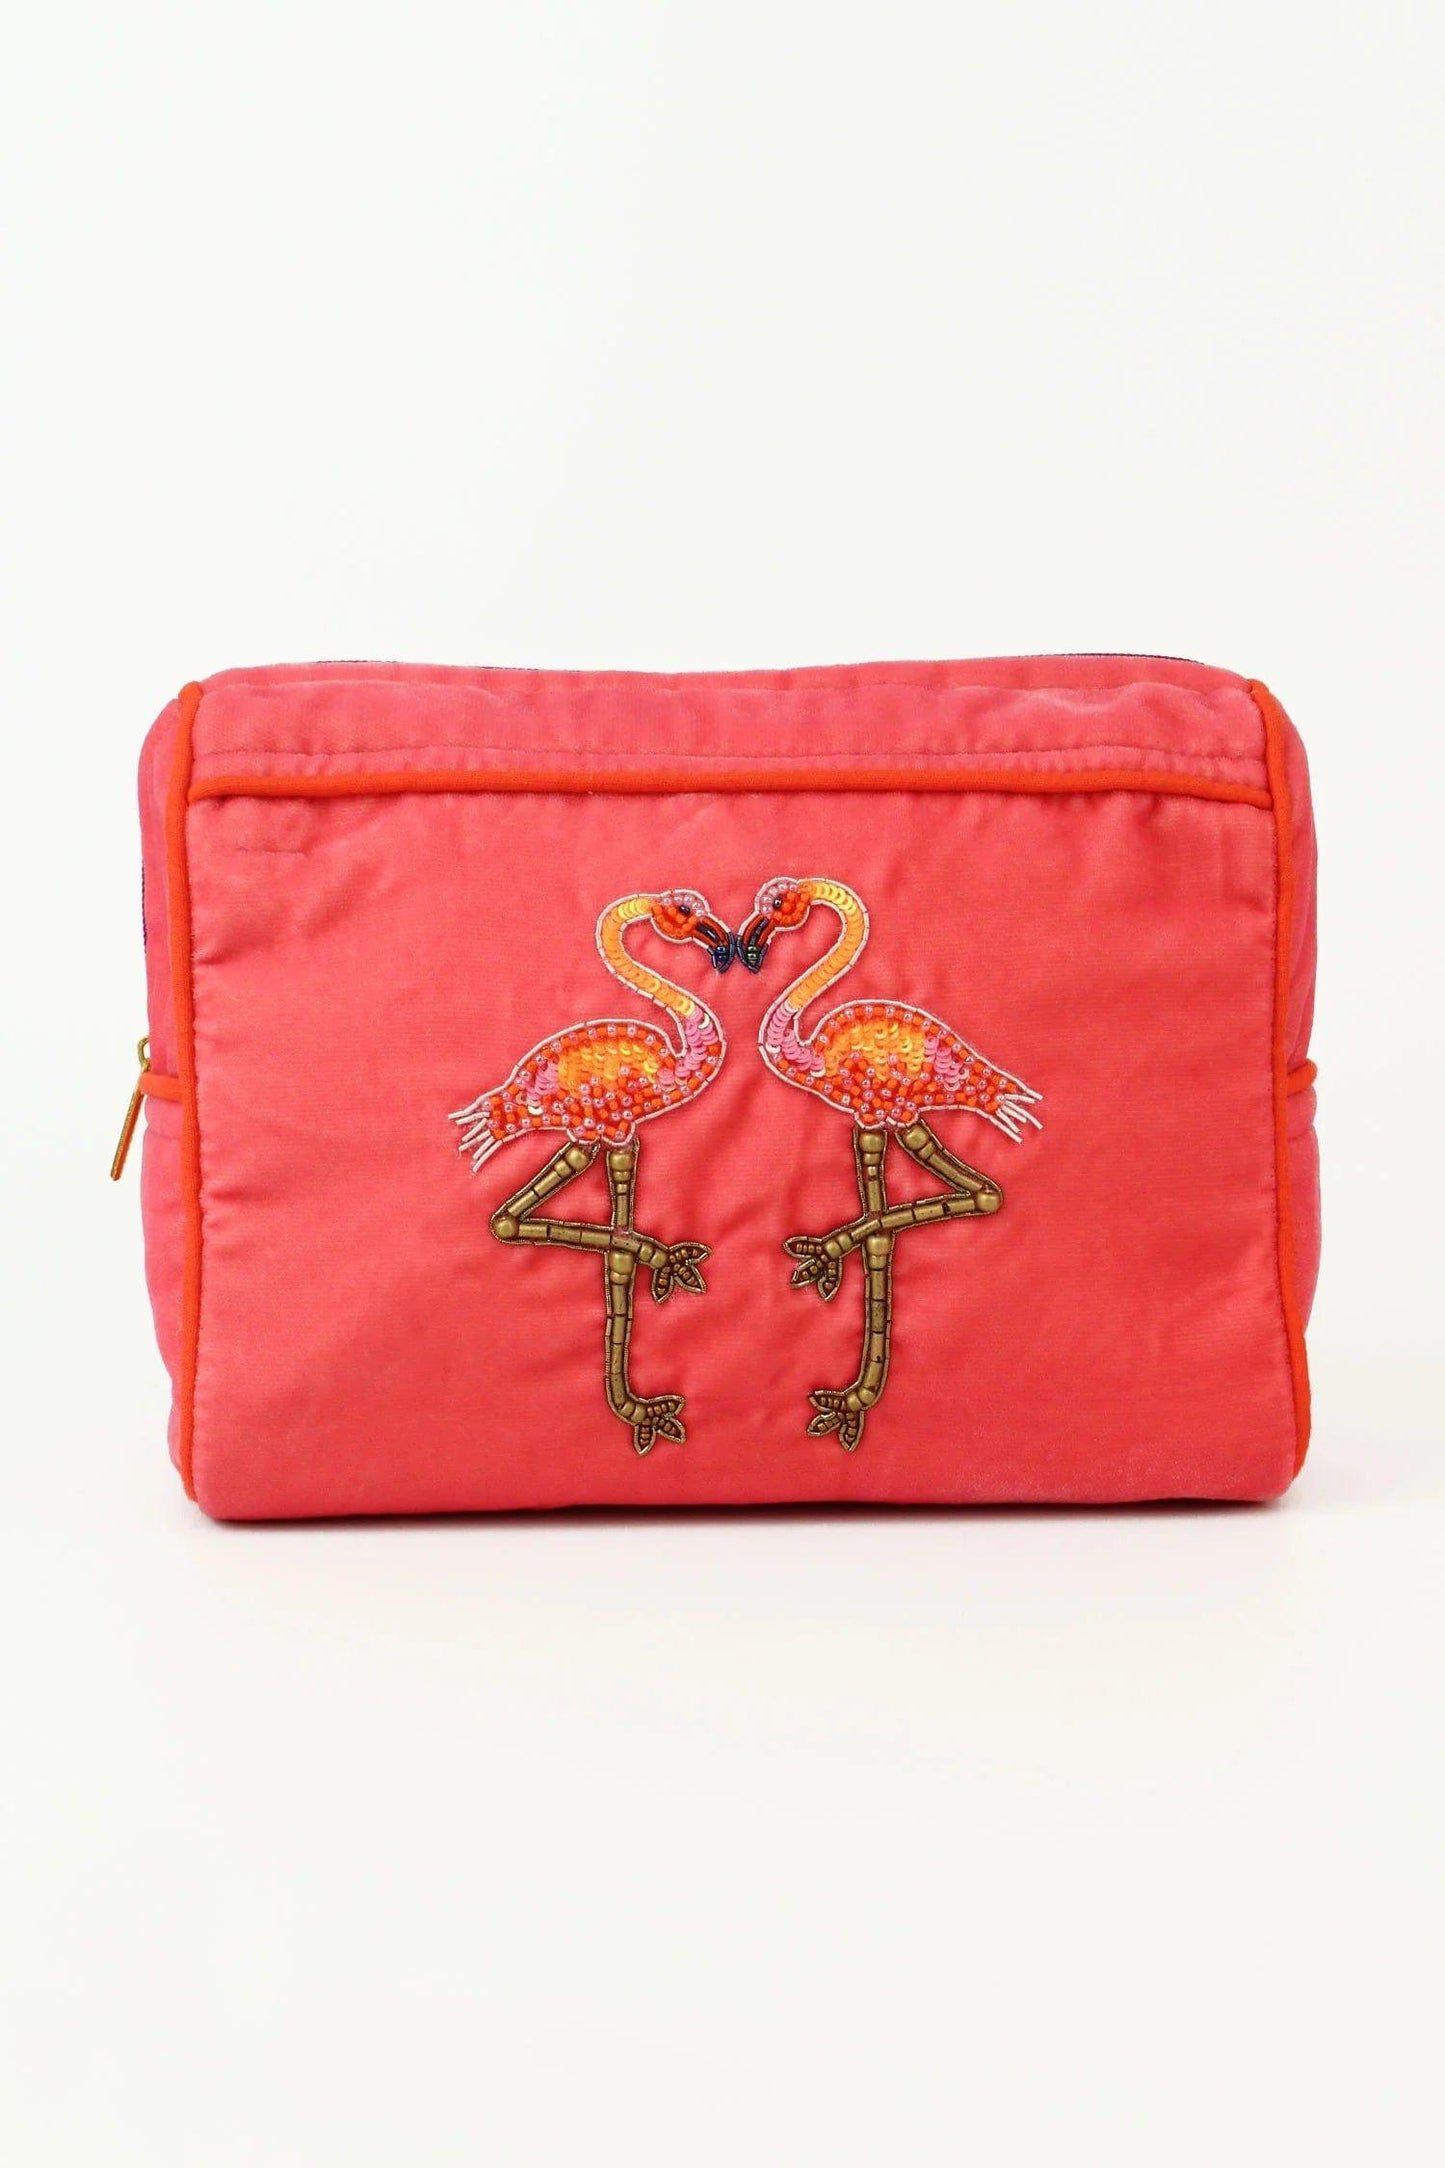 My Doris Pink Flamingo Make-up Bag